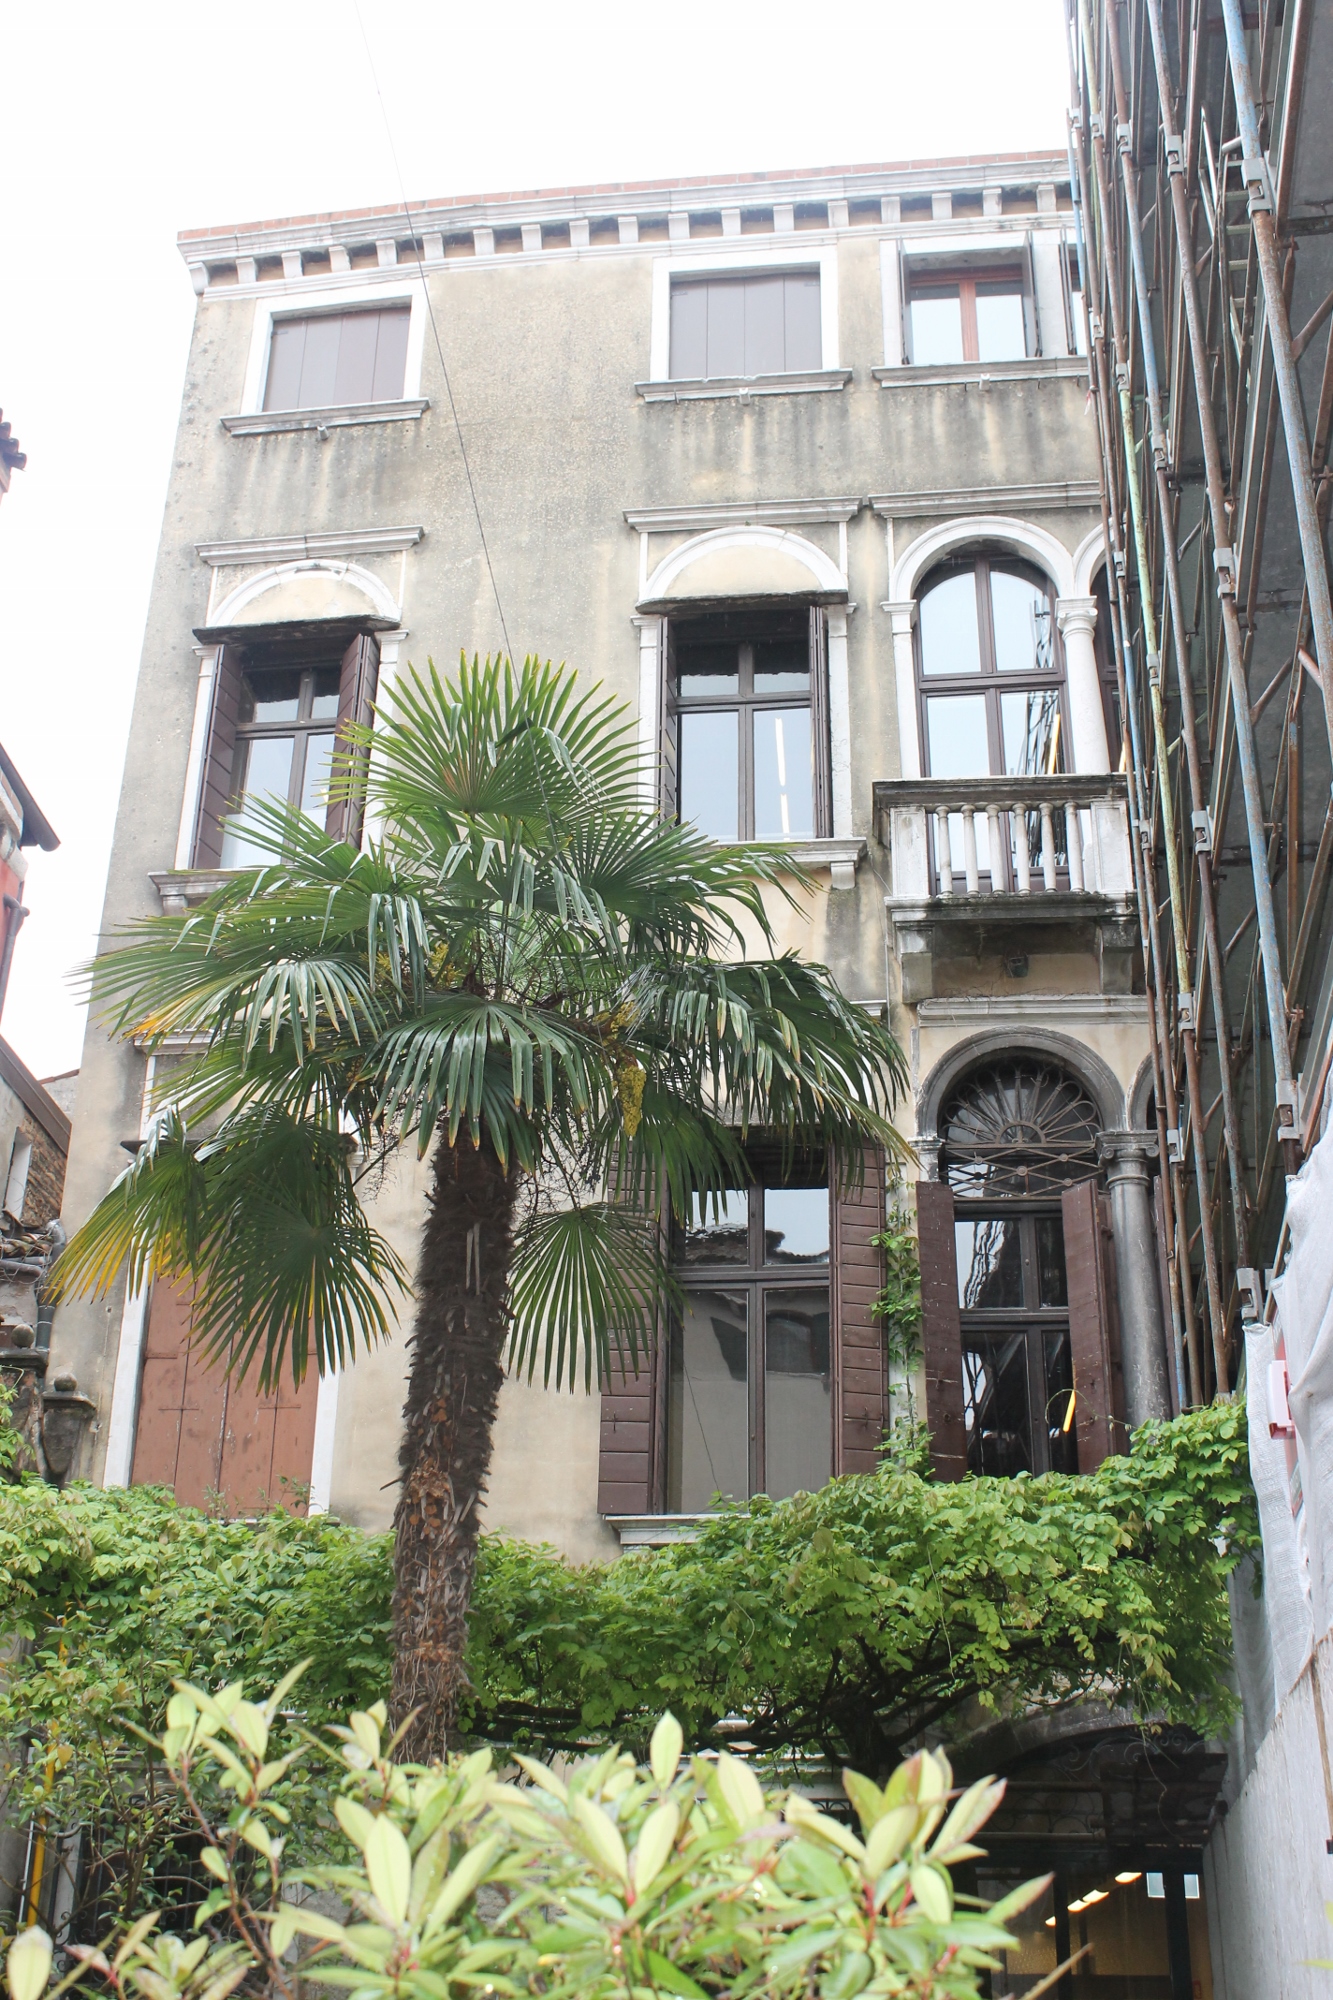 Palazzo Boldù (palazzo, di famiglia) - Venezia (VE)  (XVI, seconda metà)